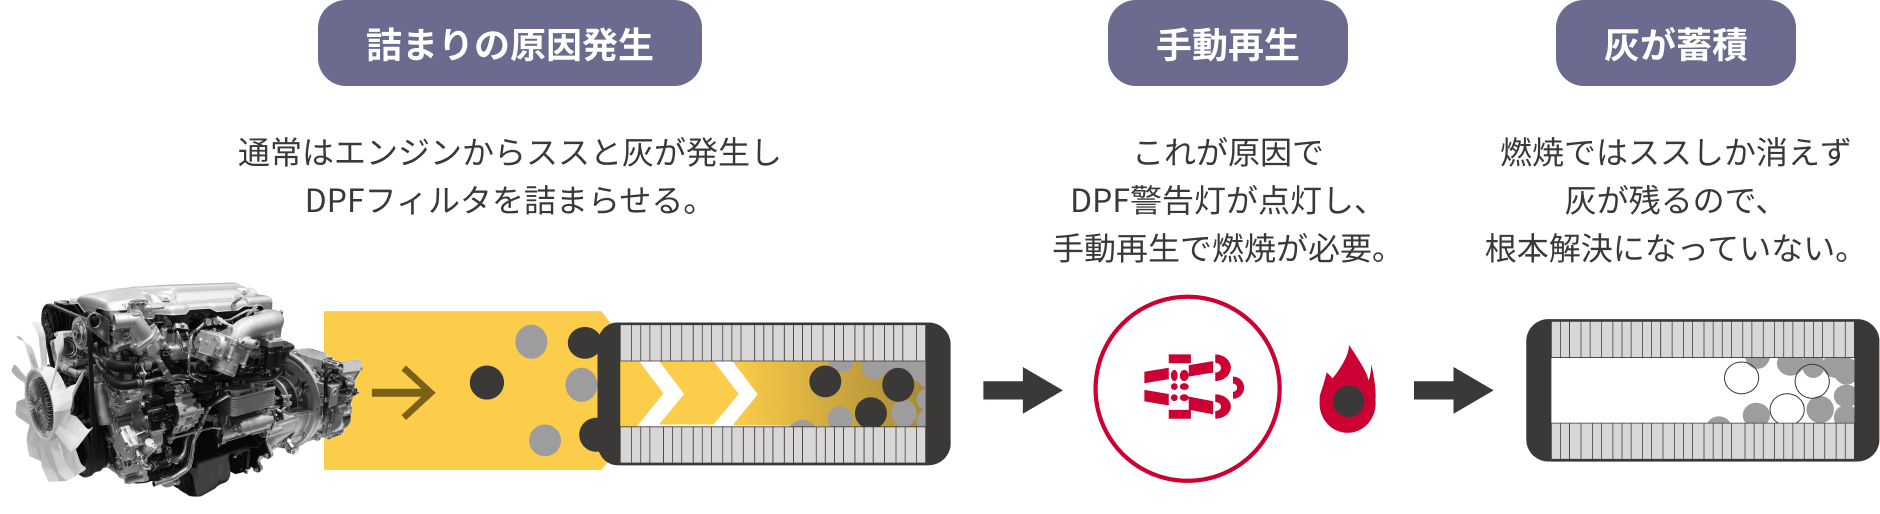 通常はエンジンからススと灰が発生しDPFフィルタを詰まらせる。これが原因でDPF警告灯が点灯し、手動再生で燃焼が必要。燃焼ではススしか消えず灰が残るので、根本解決になっていない。